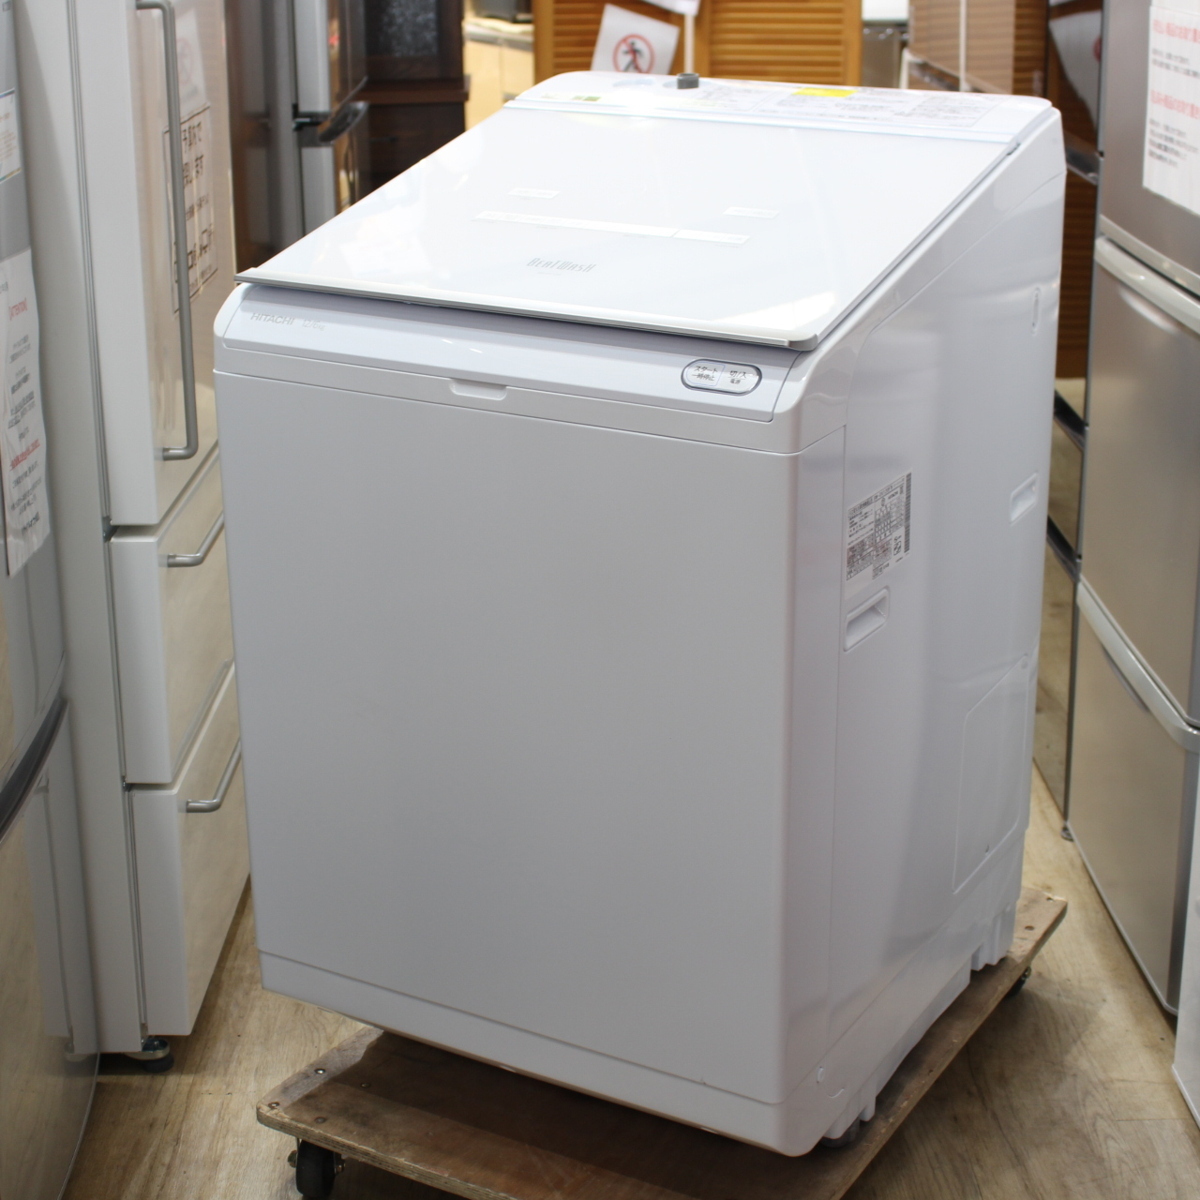 川崎市宮前区にて 日立 縦型洗濯乾燥機 BW-DX120F 2020年製 を出張買取させて頂きました。